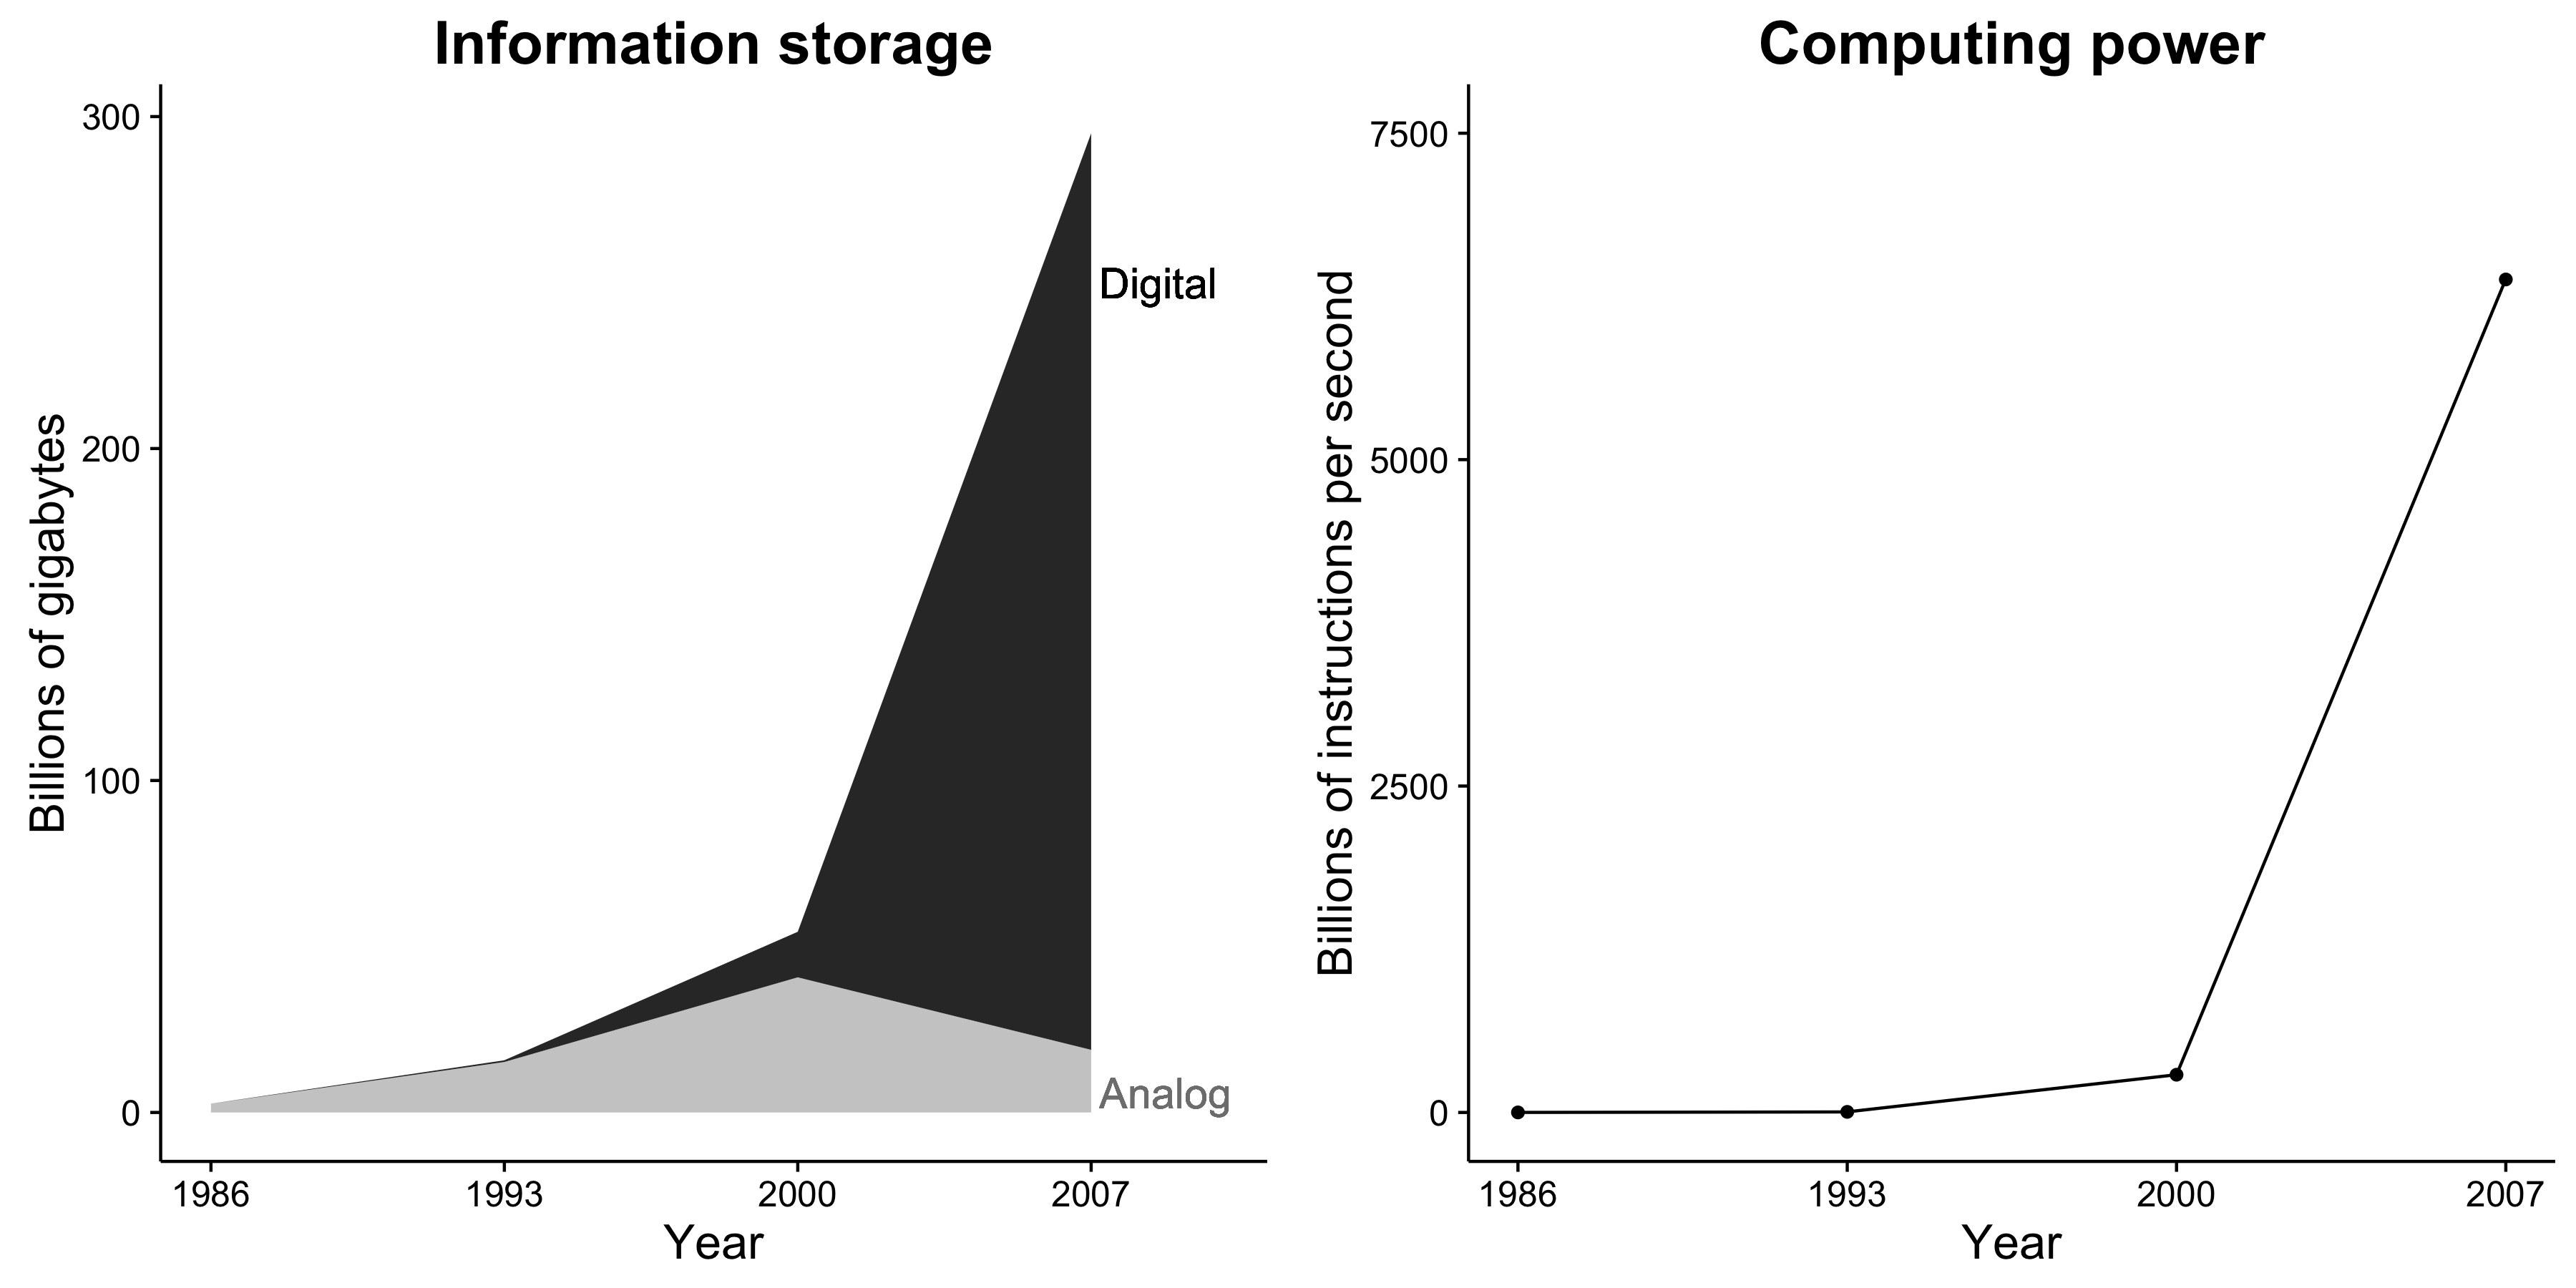 Slika 1.1: Kapacitet pohrane podataka i računalna snaga dramatično se povećavaju. Nadalje, pohrana podataka sada je gotovo isključivo digitalna. Te promjene stvaraju nevjerojatne mogućnosti za društvene istraživače. Prilagođeno Hilberta i López (2011), slike 2 i 5.